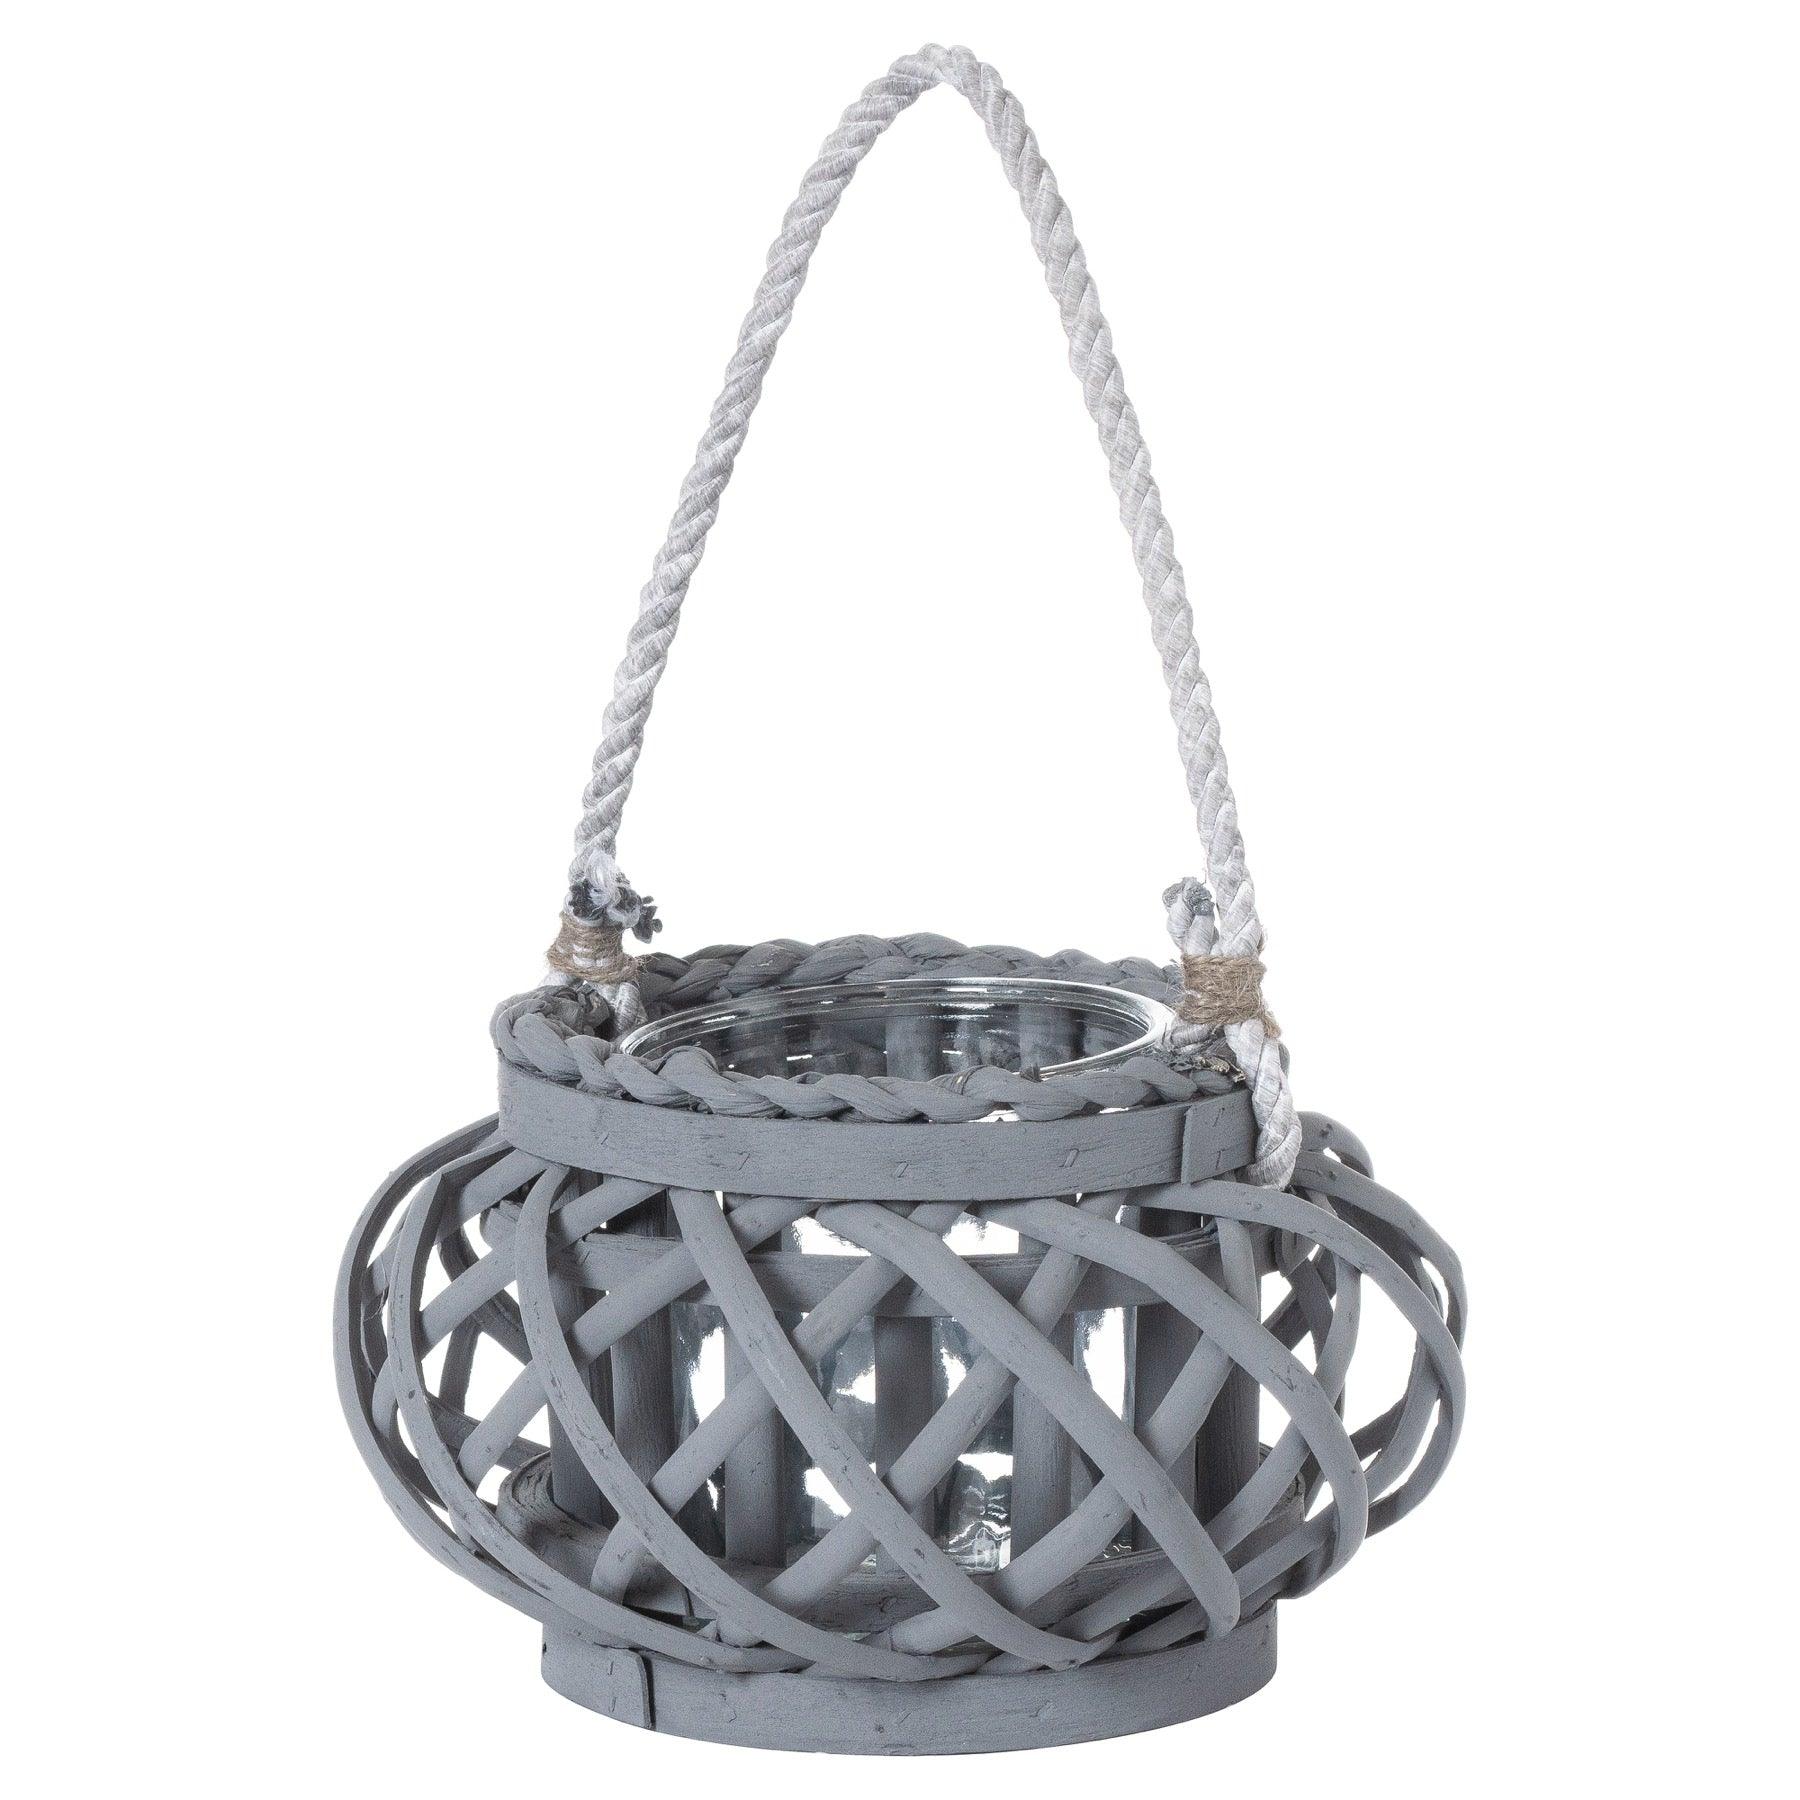 View Large Grey Wicker Basket Lantern information